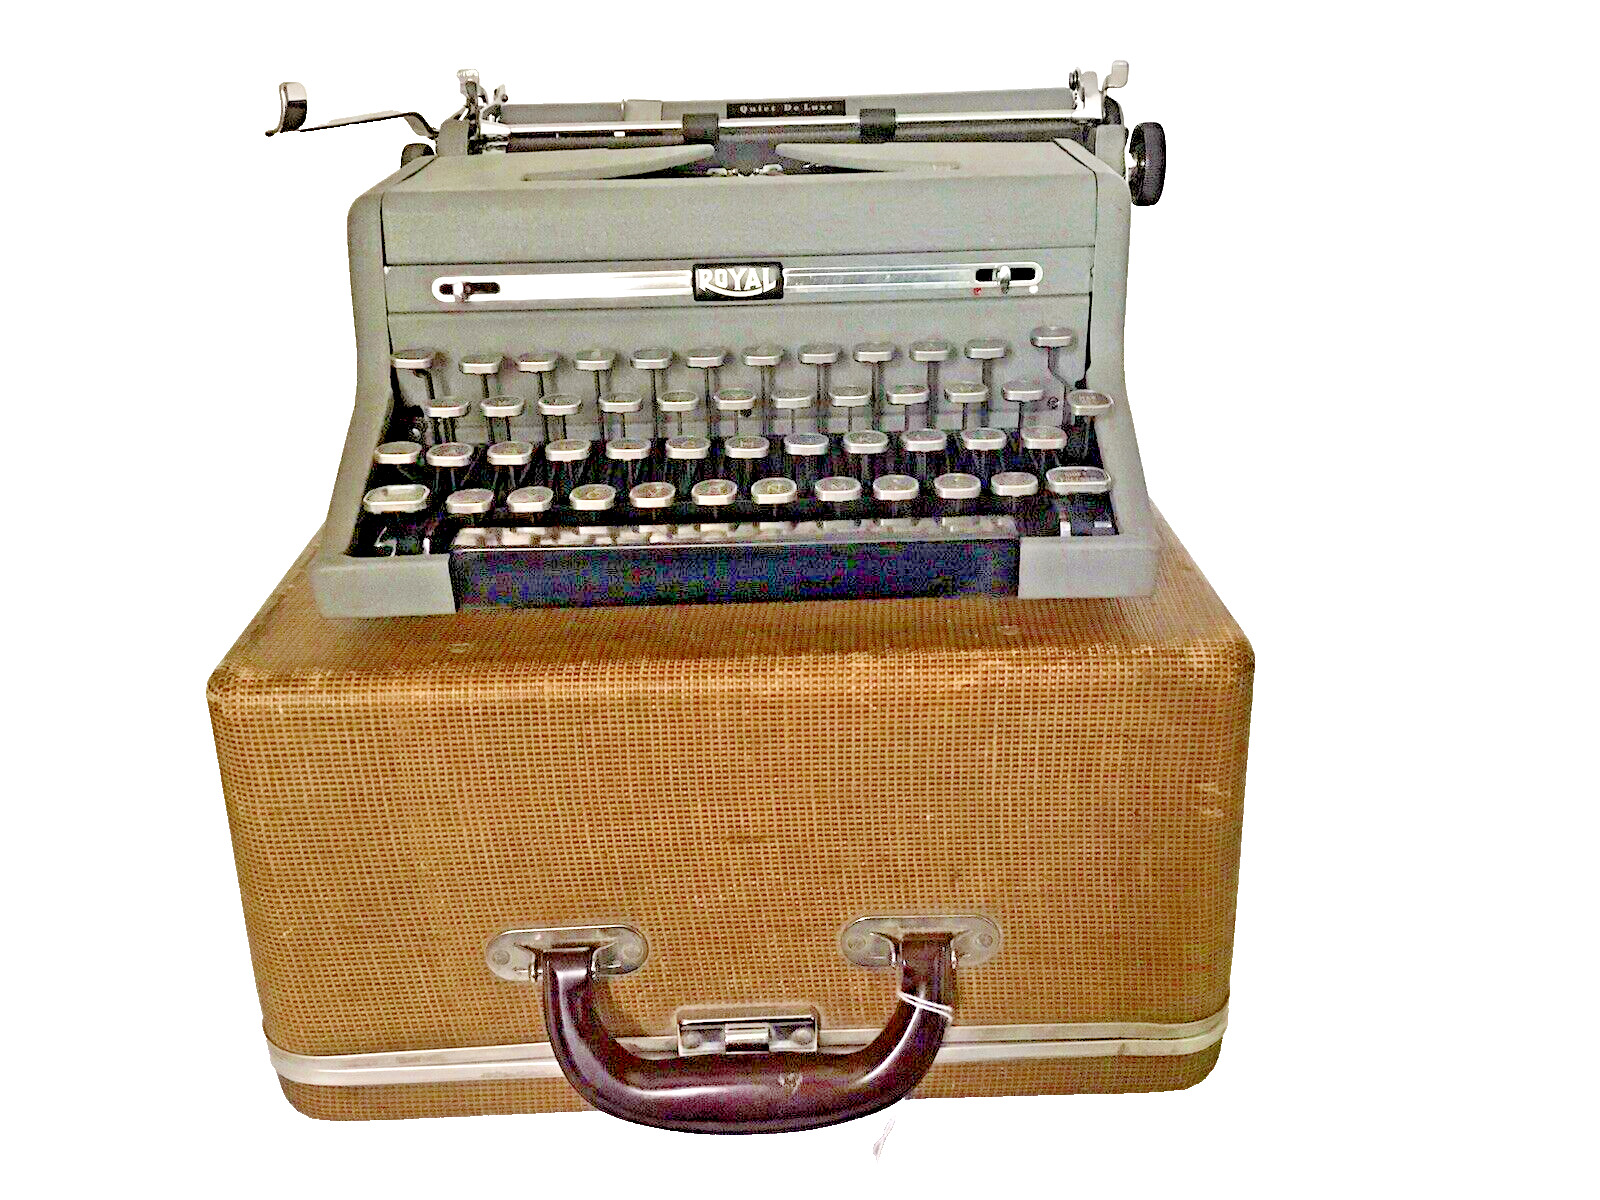 Vintage Royal Quiet De Luxe Portable Typewriter Original Case A- 1844674 Nice 